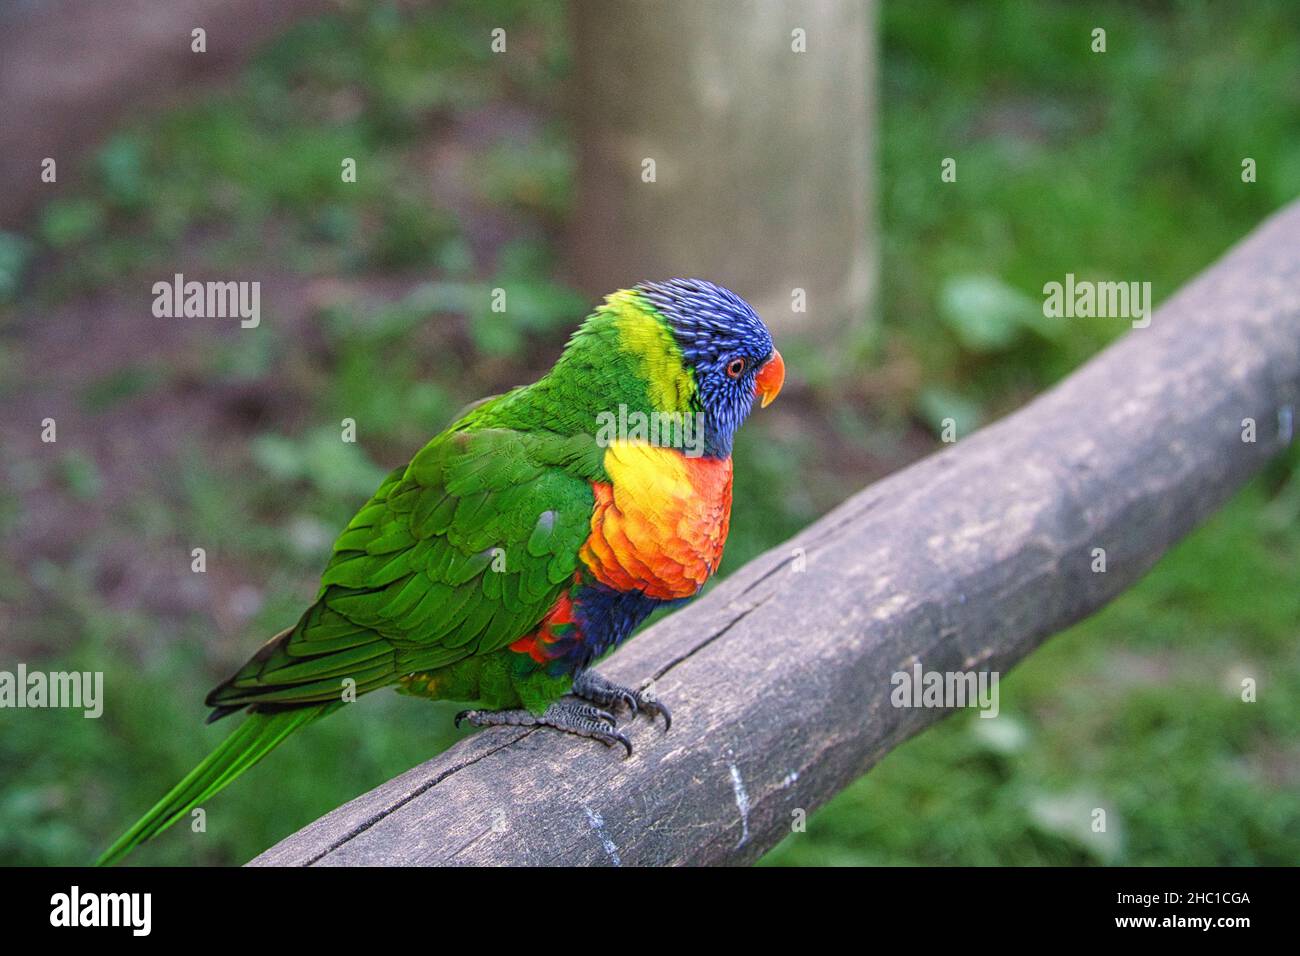 Lorikeet, kurz Lori genannt, sind papageienartige Vögel im bunten Gefieder. Sie sind sehr neugierig und schön anzusehen Stockfoto